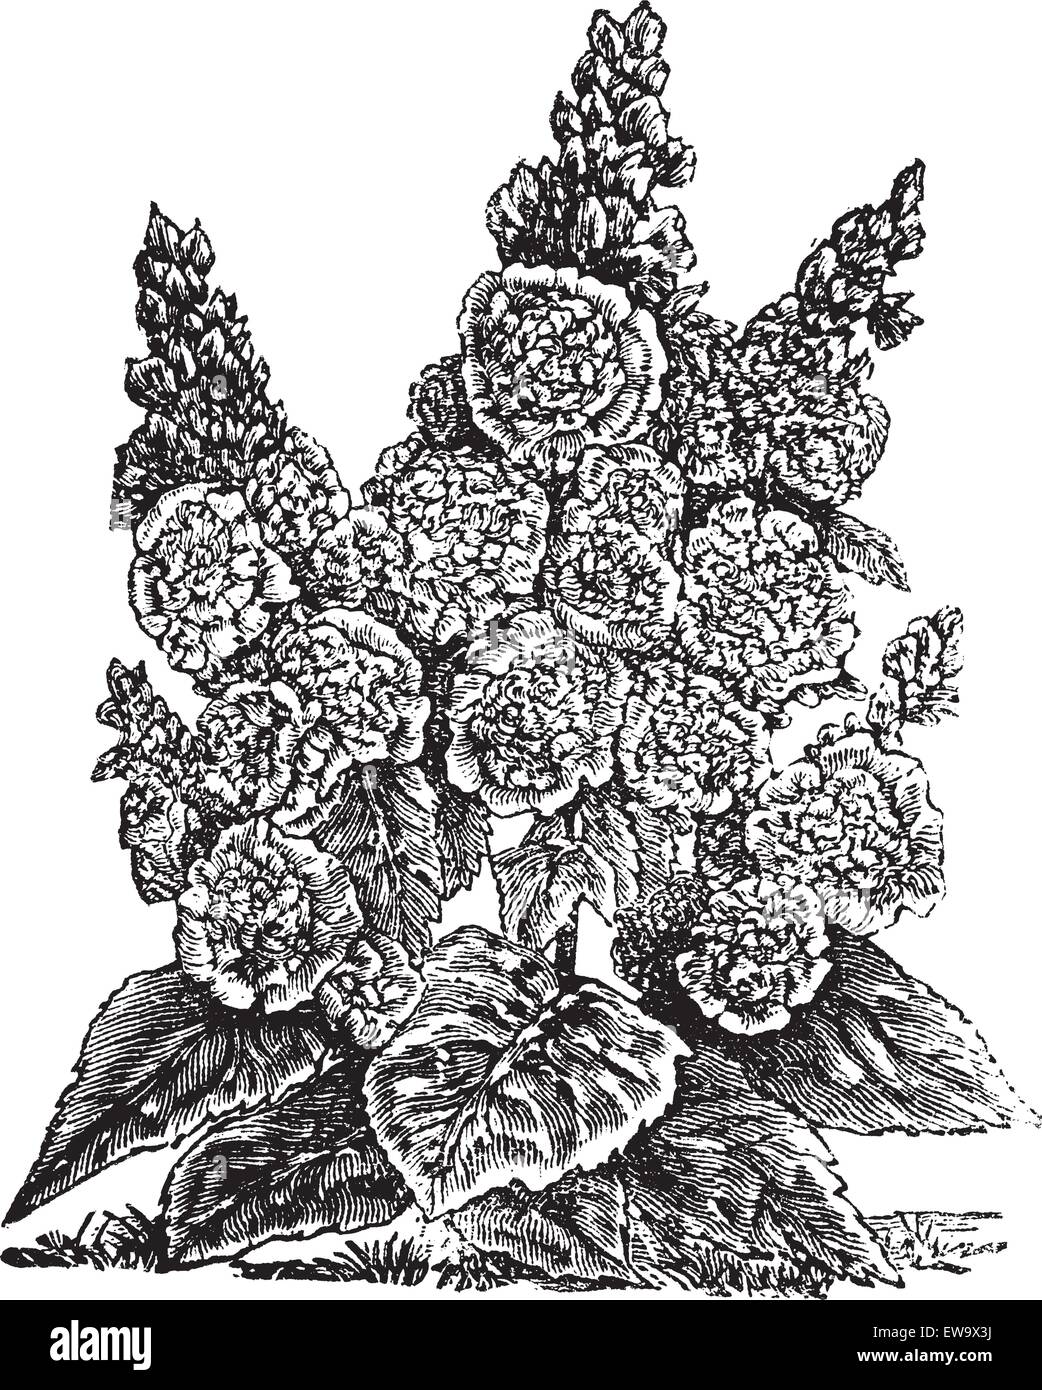 Doppel Zwerg Hollyhocks oder Alcea rosea Vintage Gravur. Alte gravierte Illustration, in Vektor, von einem doppelten Zwerg Hollyhock Pflanze und Blumen. Stock Vektor